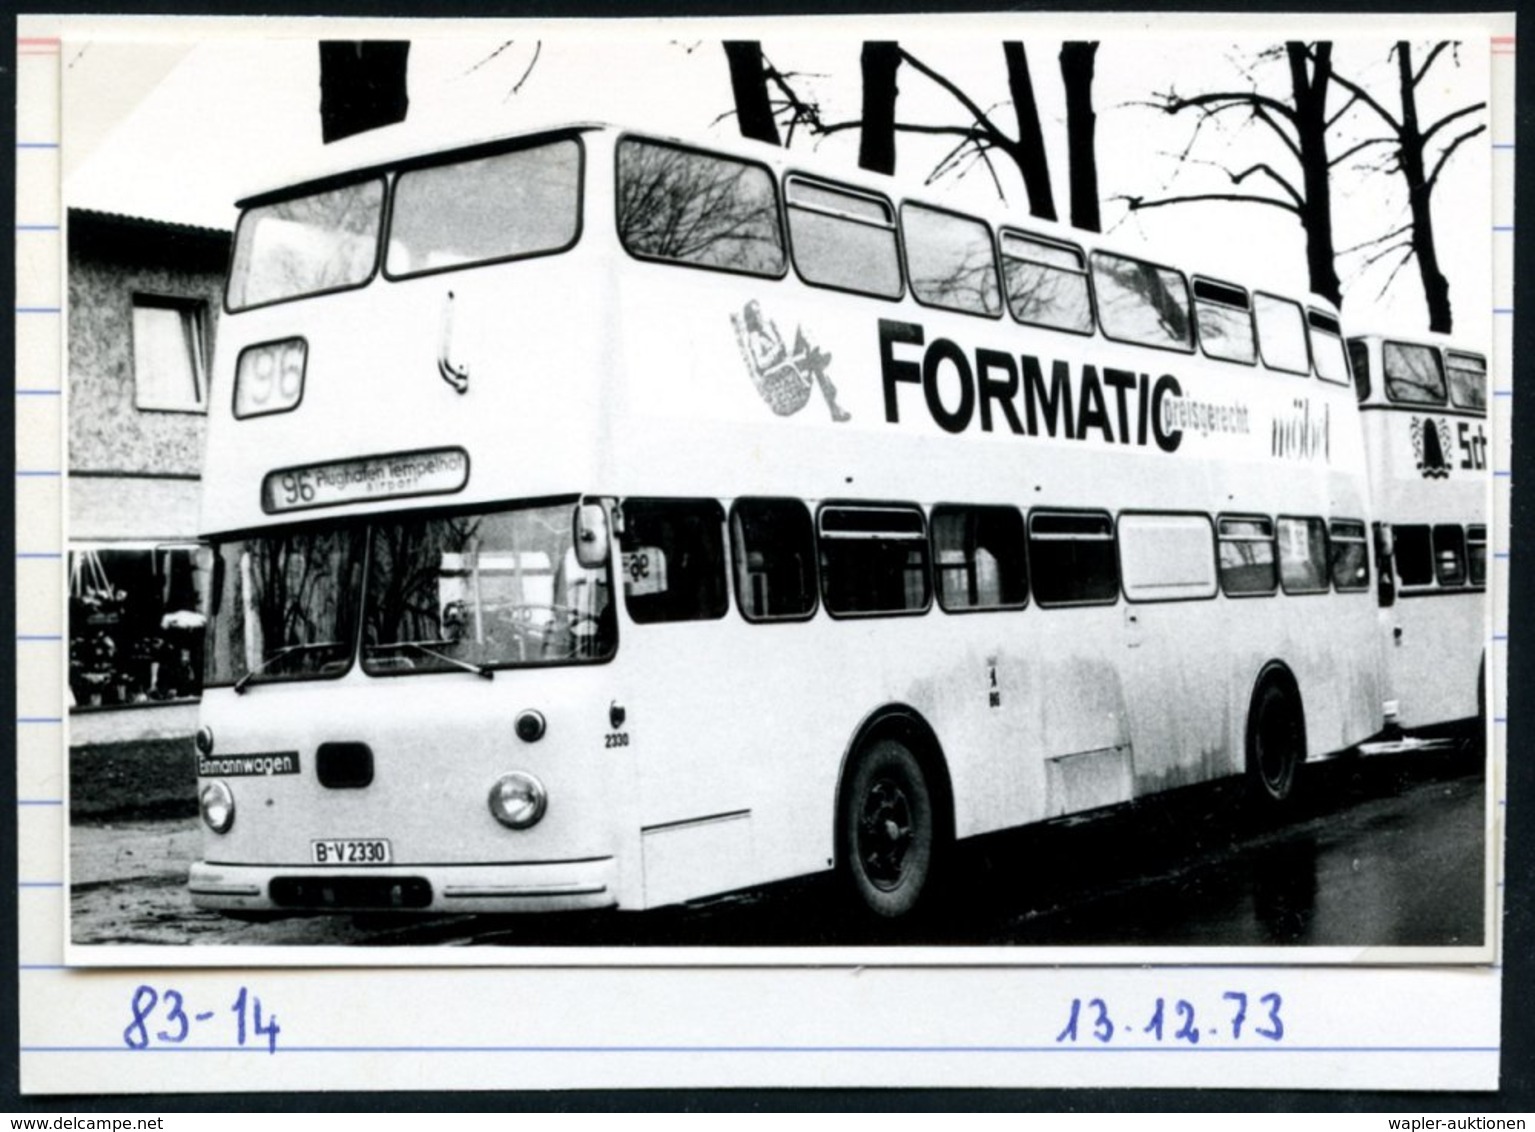 1972/75 BERLIN, 10 verschiedene s/ w.-Fotos der BVG (West) Doppeldecker-Omnibusse (meist Format 7 x 10,5 cm) mit Getränk